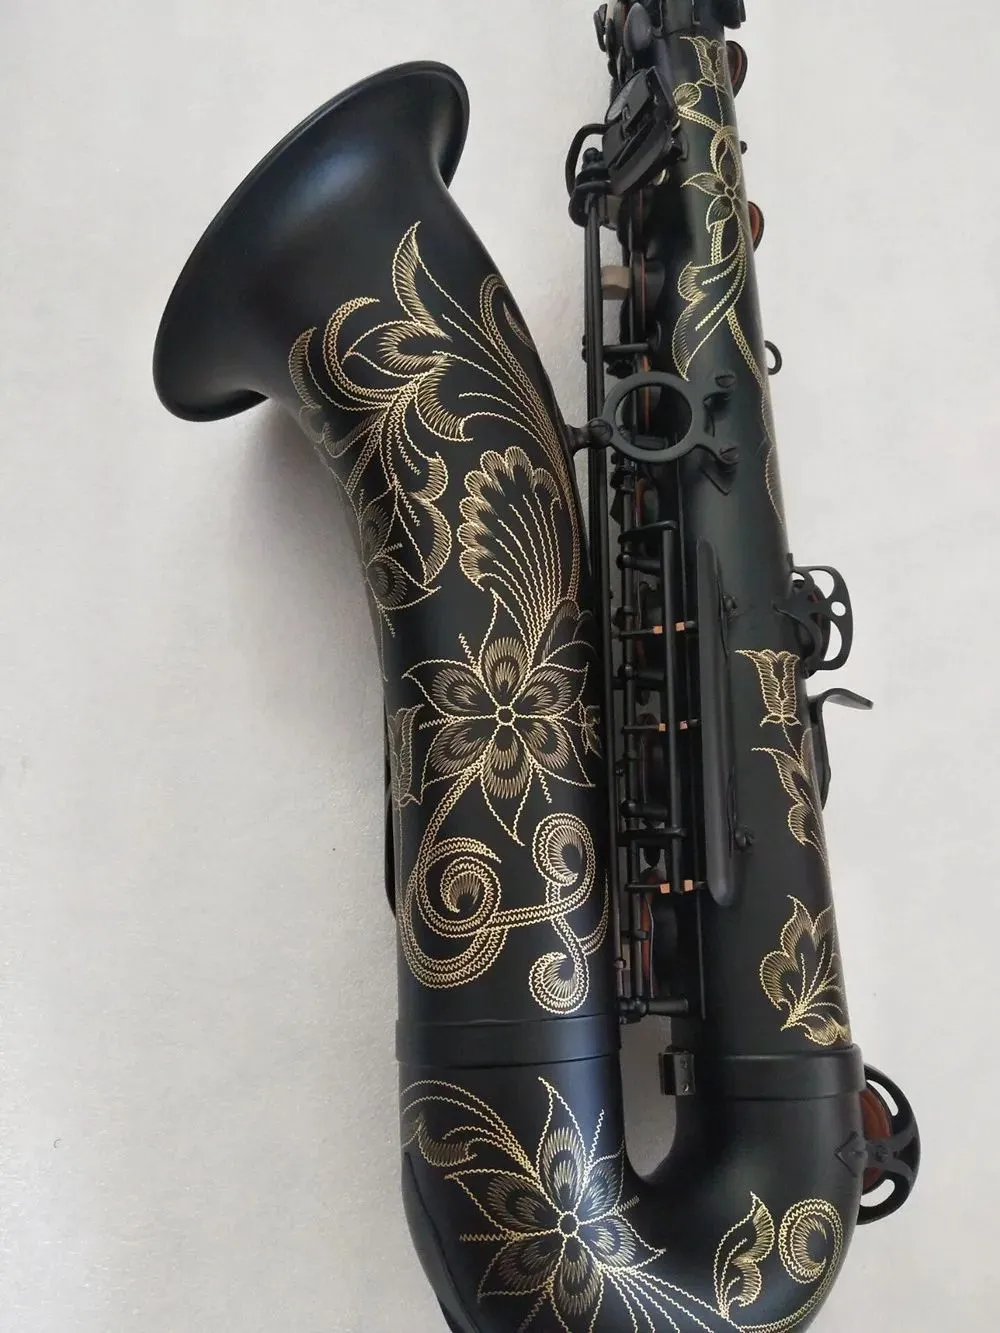 Super desempenho profissional tenor sax b melodia plana musical melhor qualidade preto ouro T-992 tenor novo saxofone